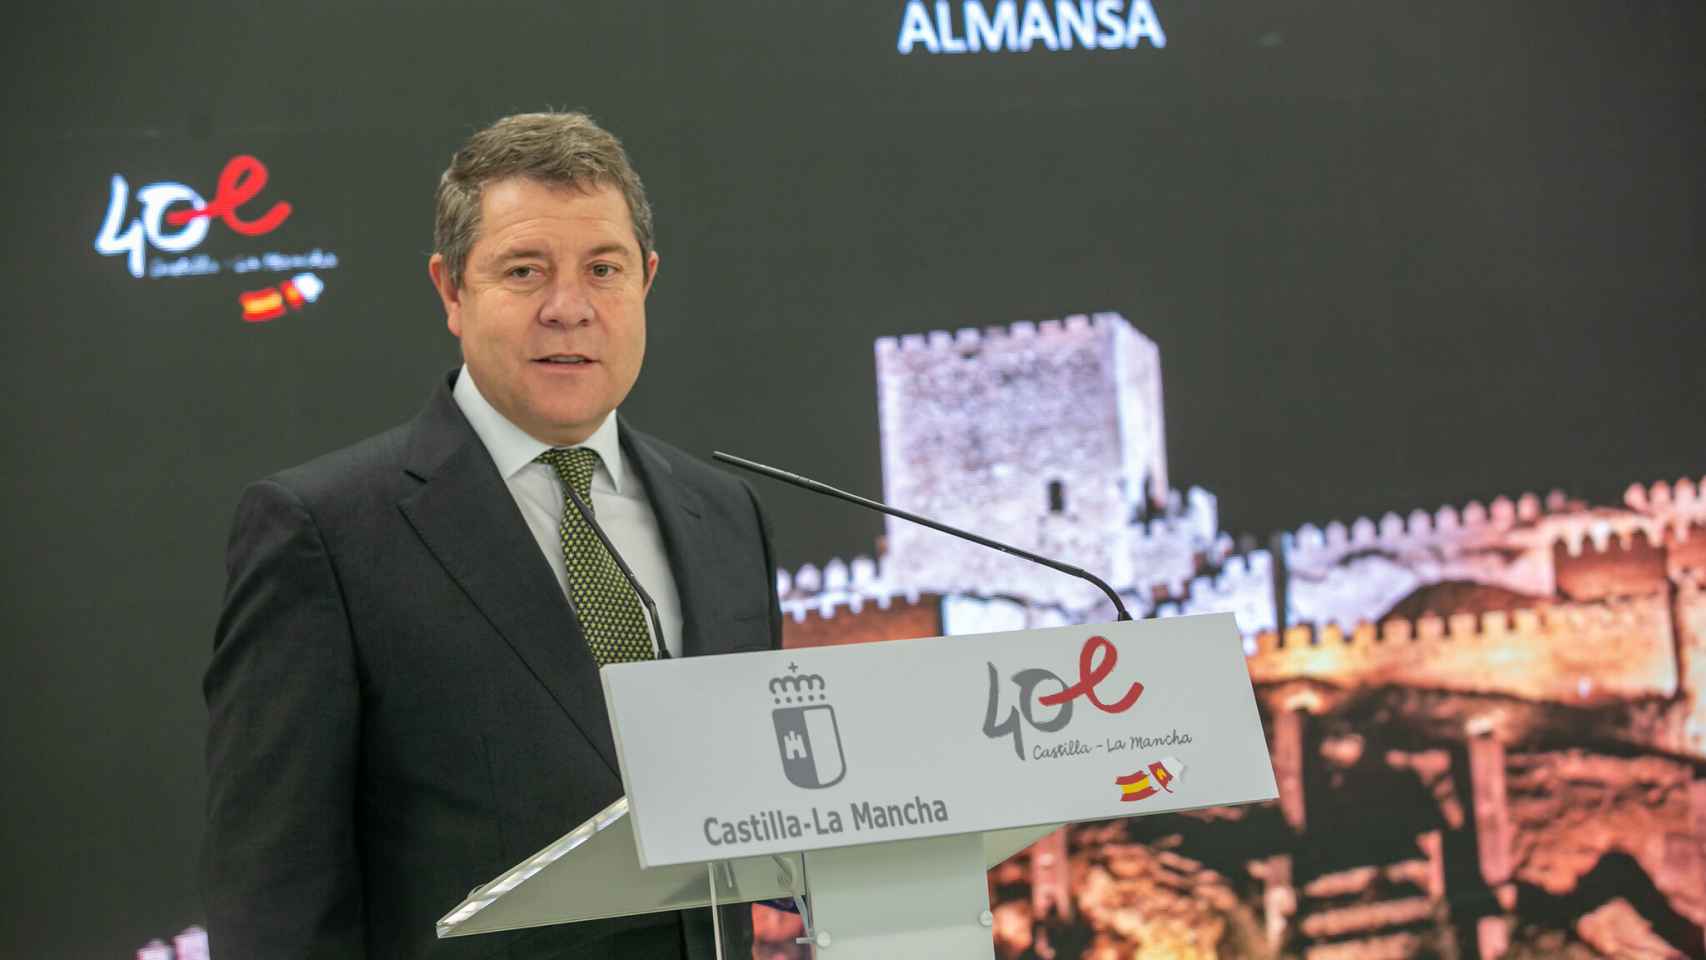 García-Page, presidente de Castilla-La Mancha, en Almansa (Albacete). Foto: JCCM